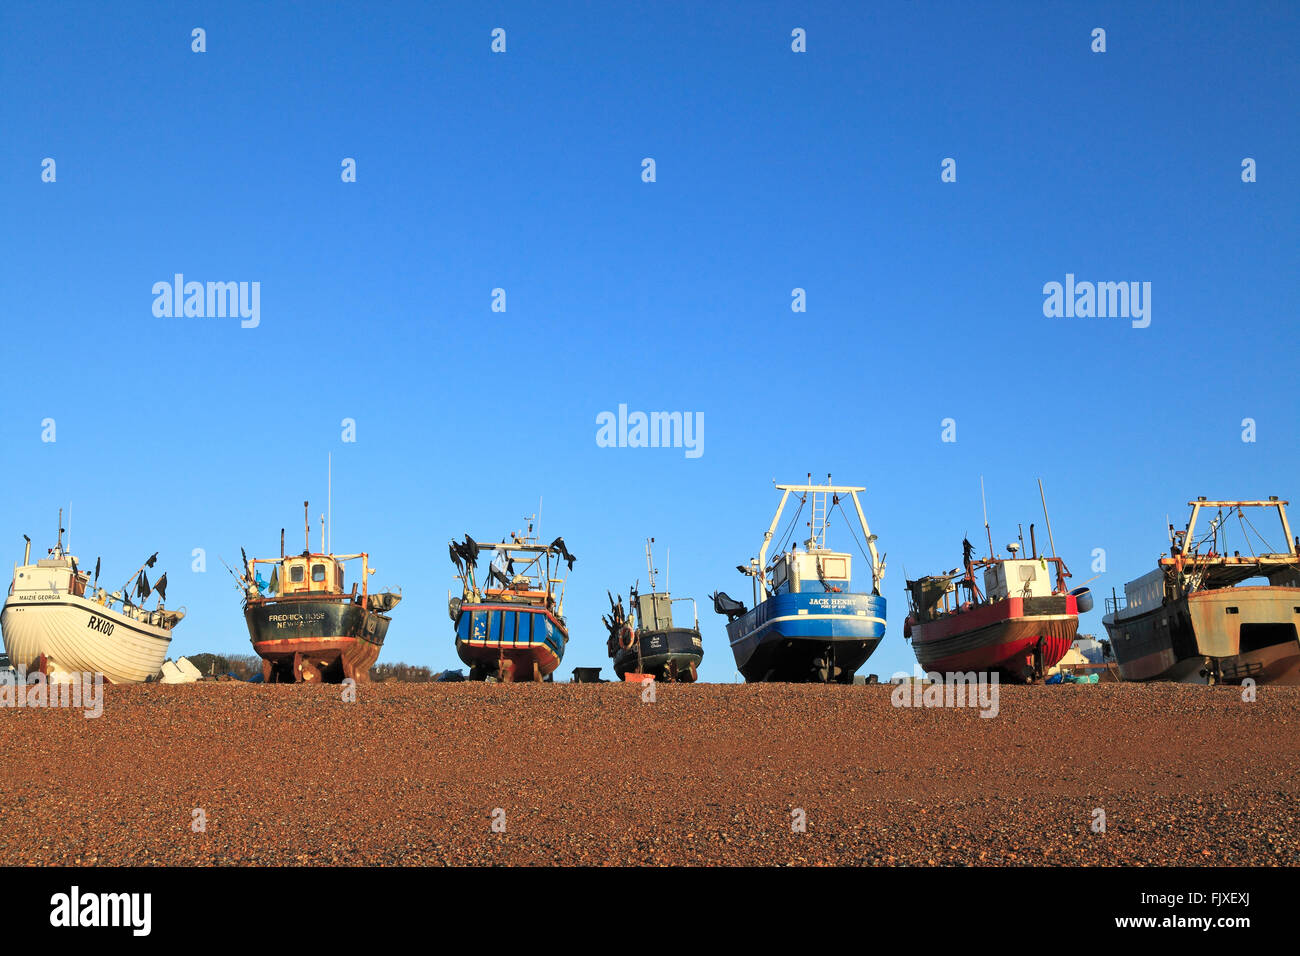 Les chalutiers de pêche sur la plage de pêcheurs près de Hastings, East Sussex, Angleterre, Royaume-Uni, UK, FR Banque D'Images